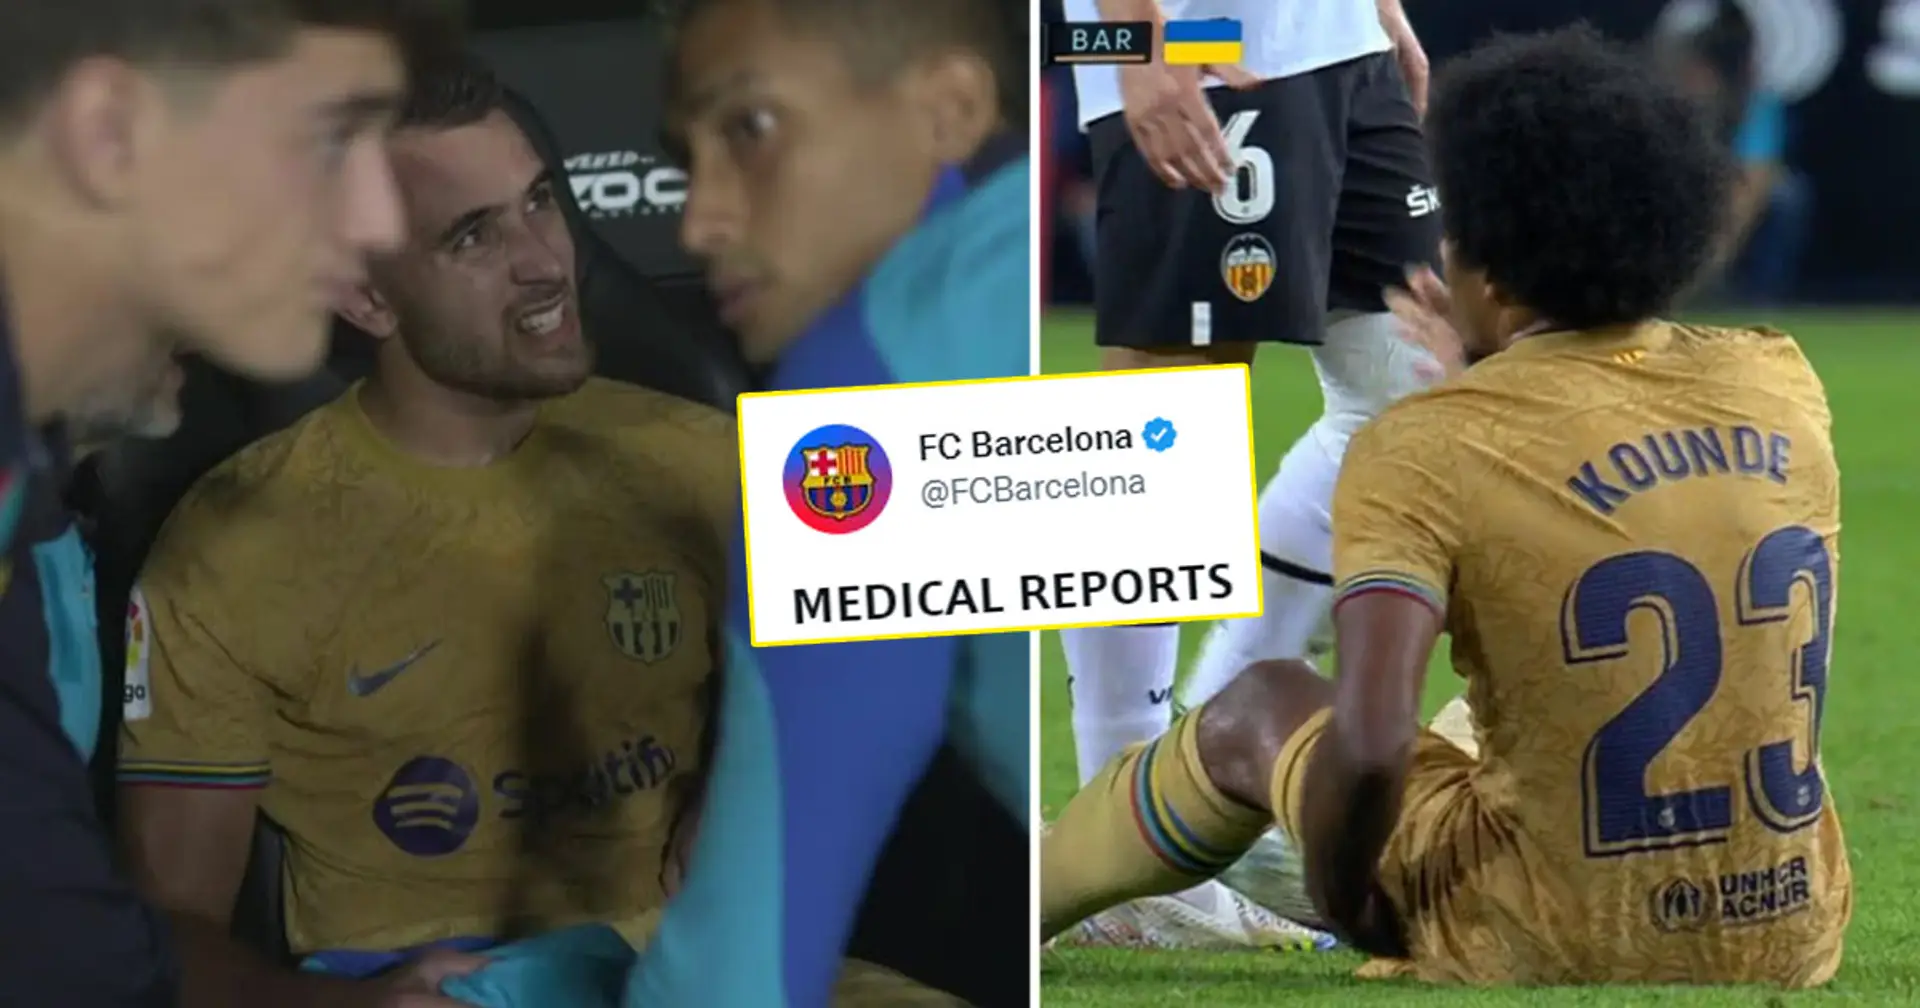 Le Barça confirme les blessures de Koundé et Garcia, la date de leur retour révélée